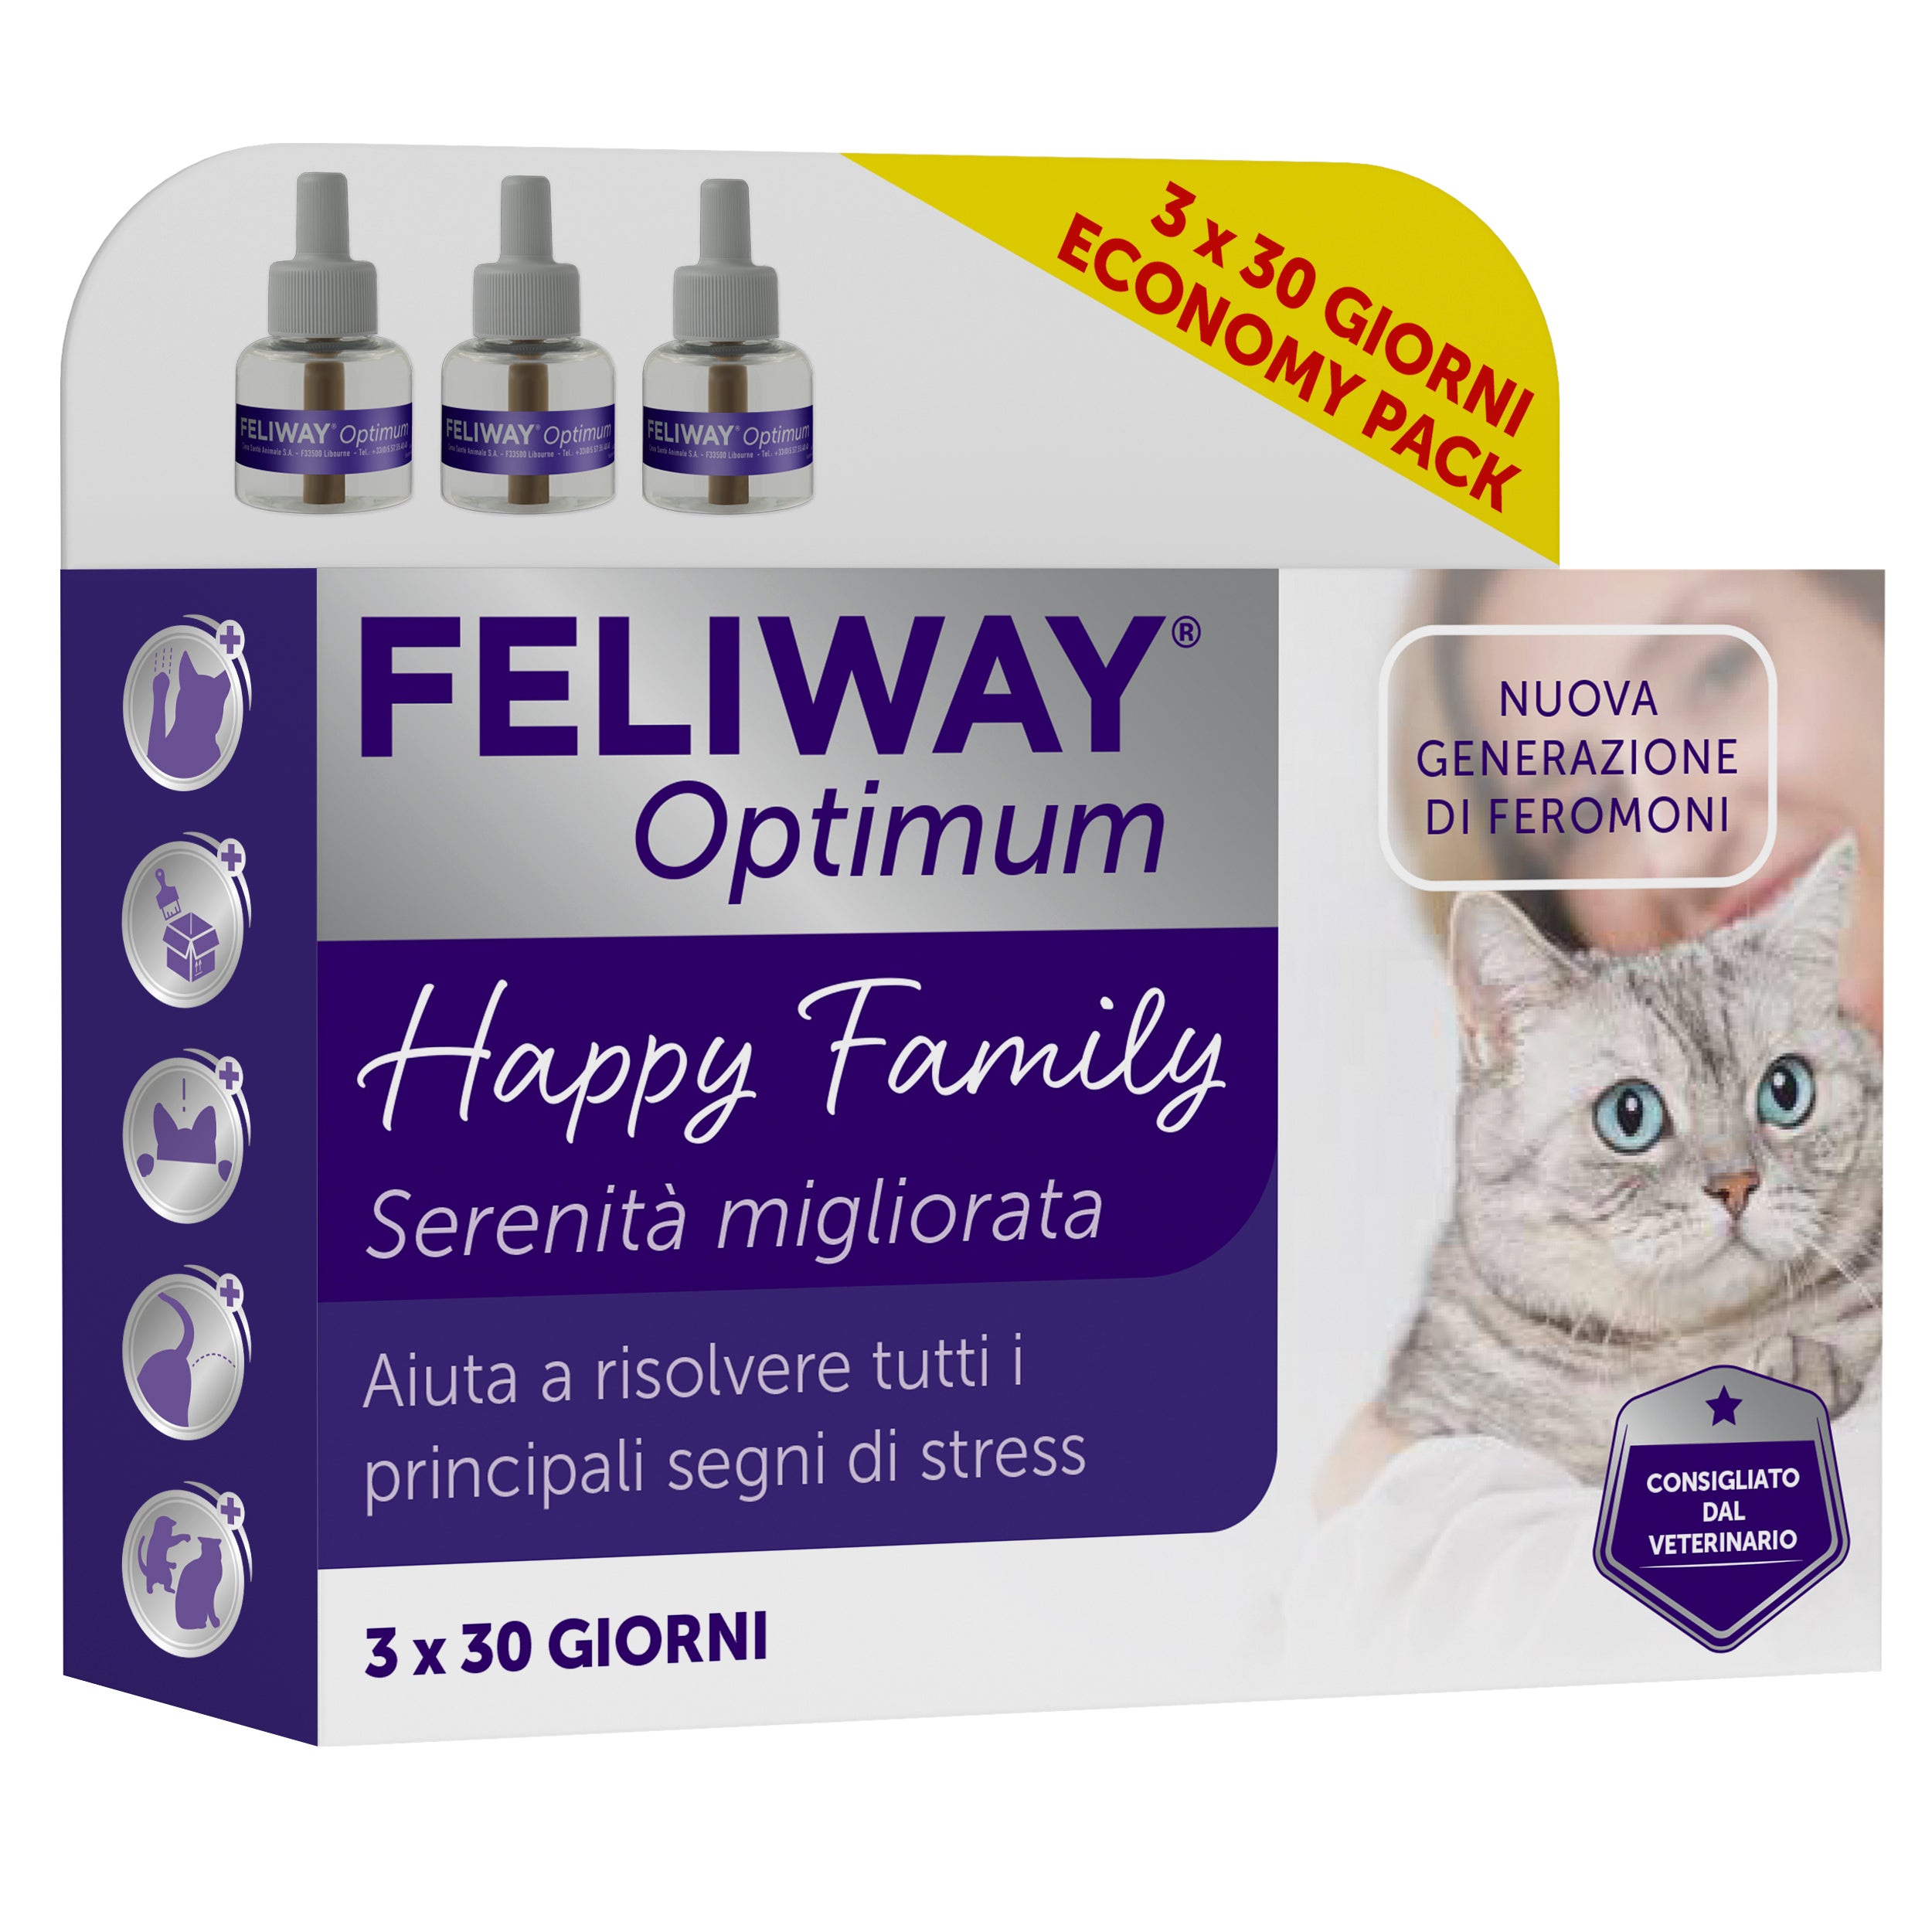 Feliway spray è un prodotto indicato per il benessere del vostro